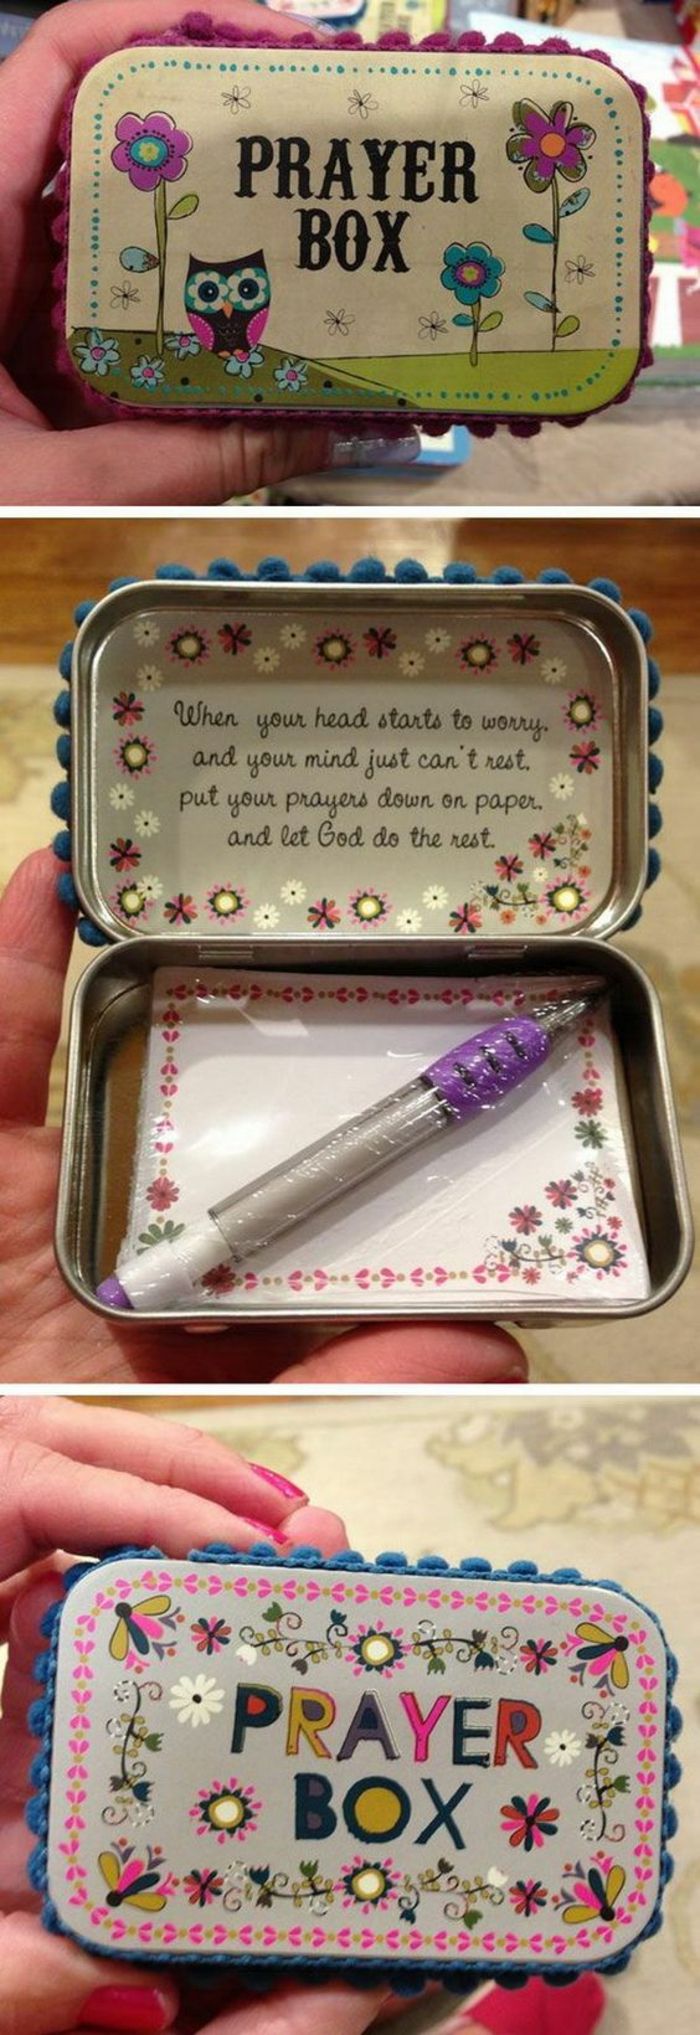 caixa lindamente decorada com pequenos pedaços de papel e caneta - presente para o Dia das Mães